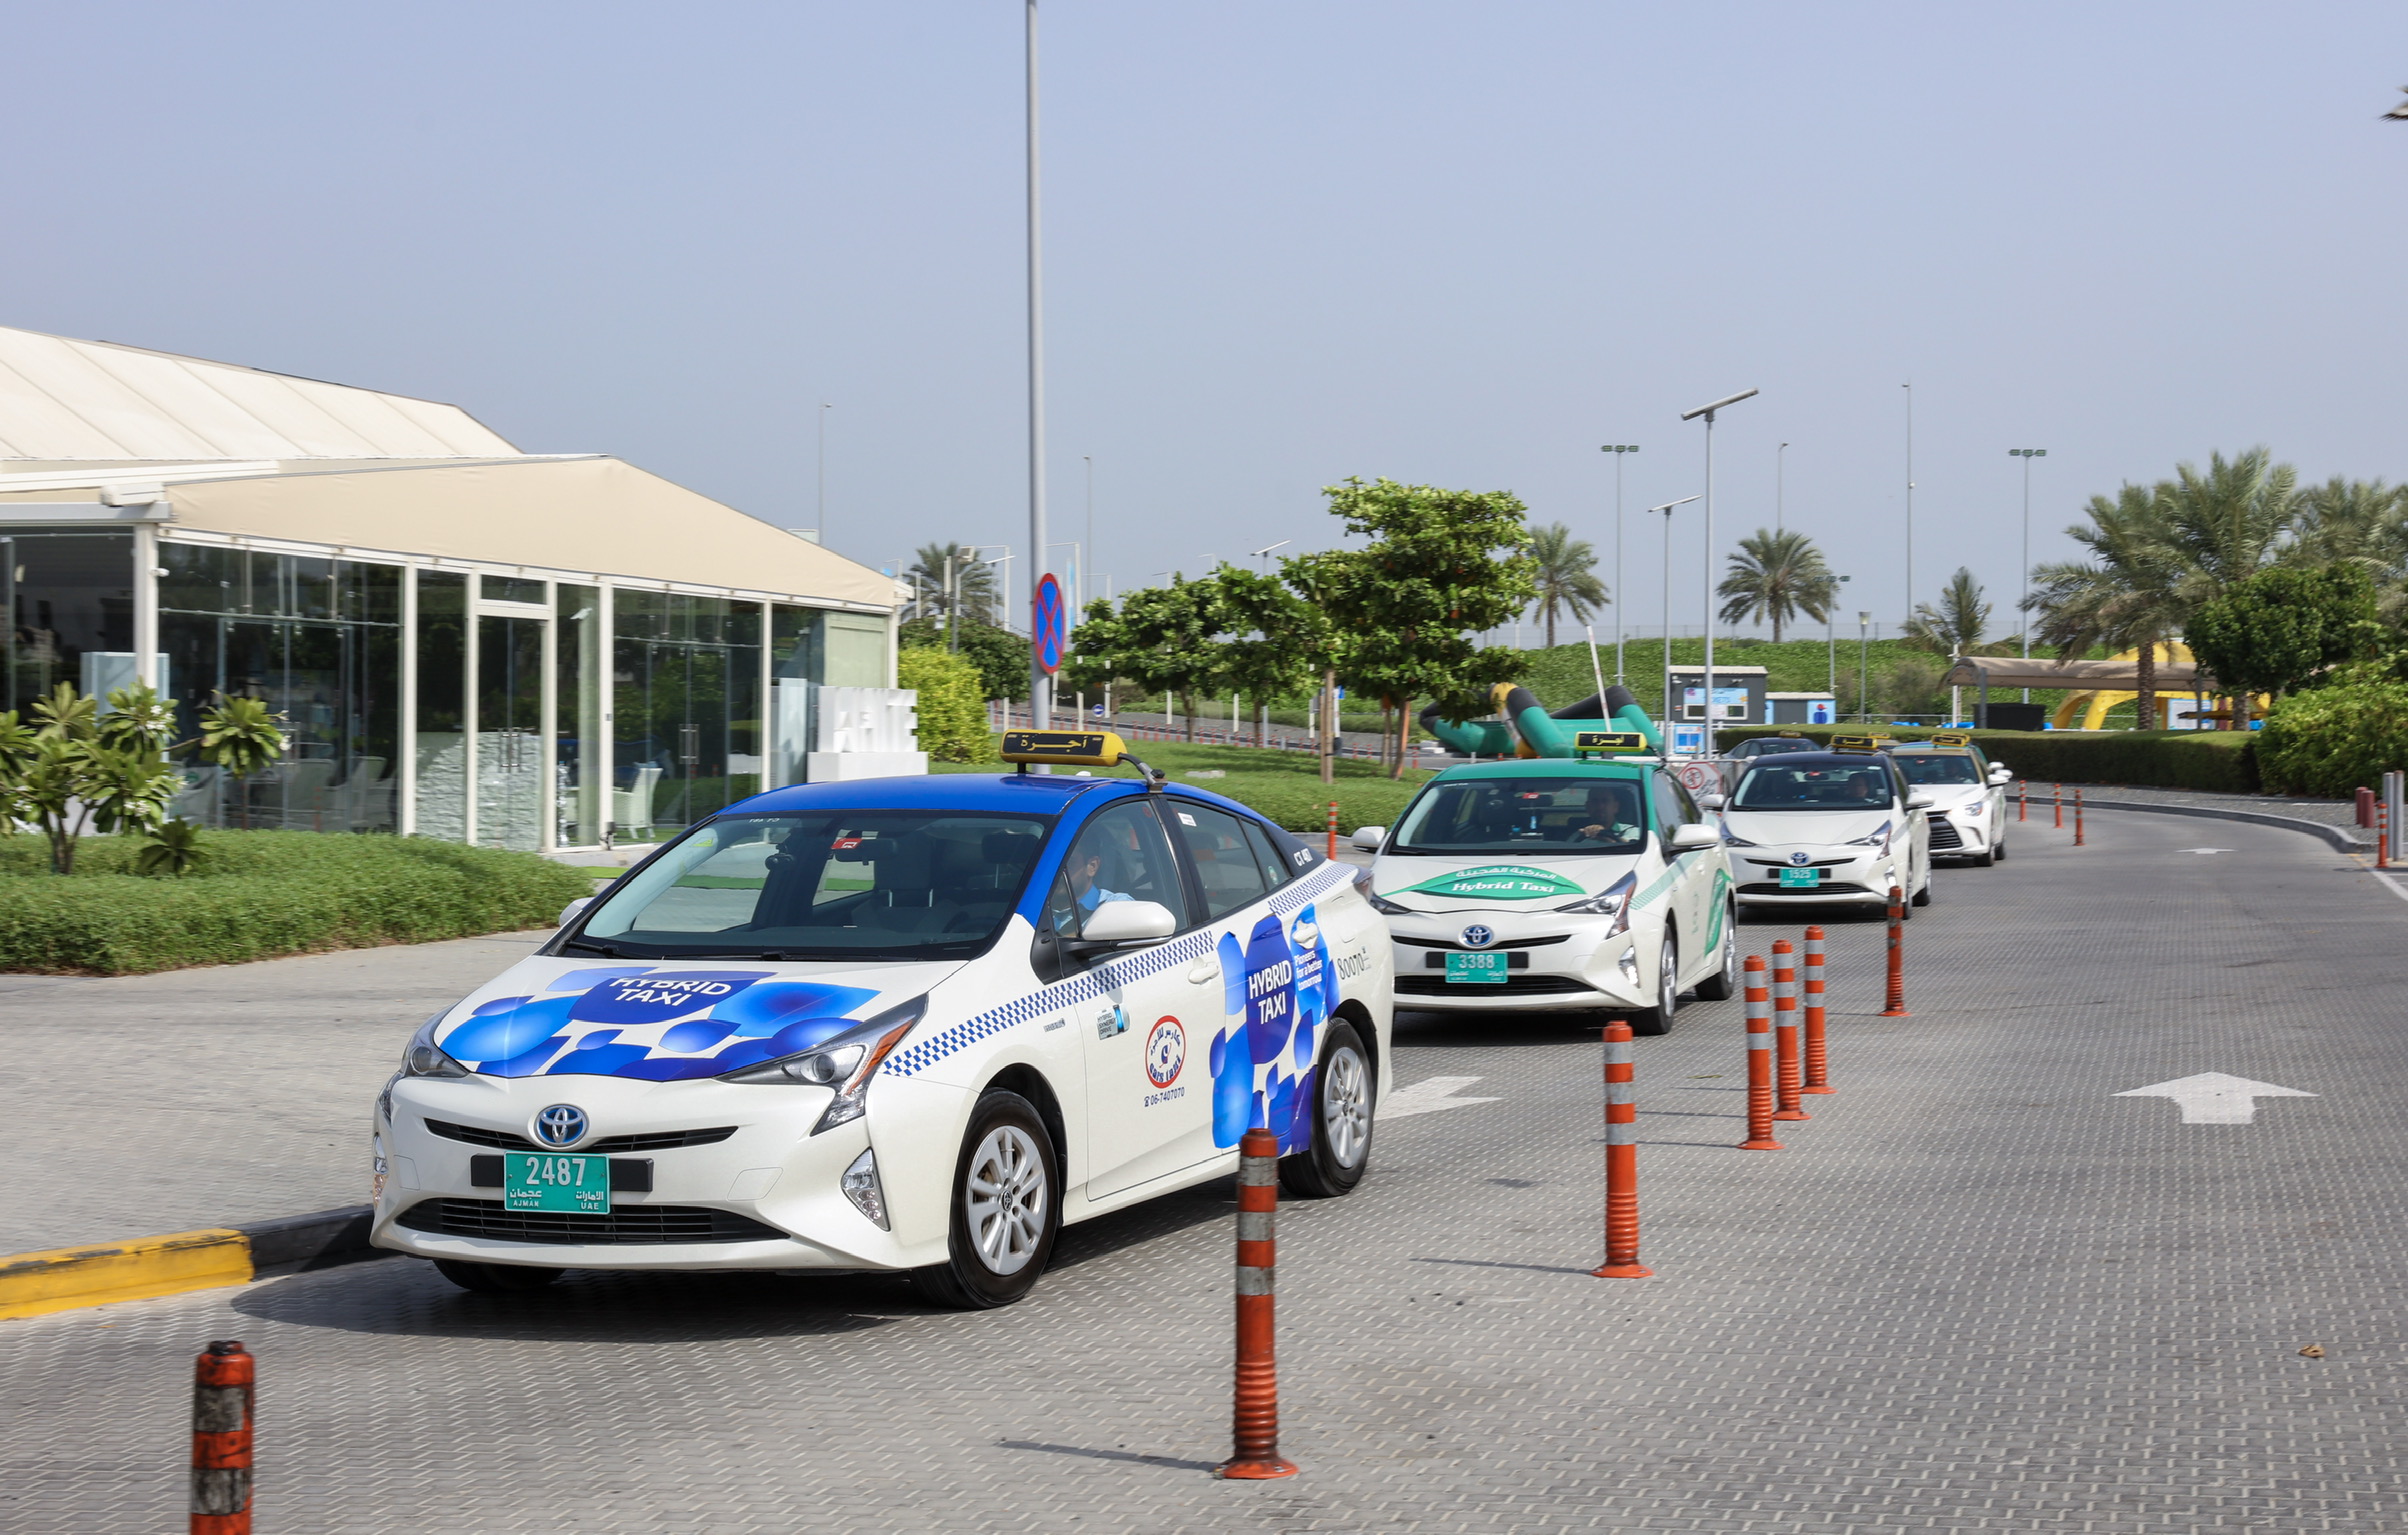 هيئة النقل في عجمان تعزز الامن بتنفيذ عدد من الحملات التفتيشية على مركبات الأجرة في الامارة